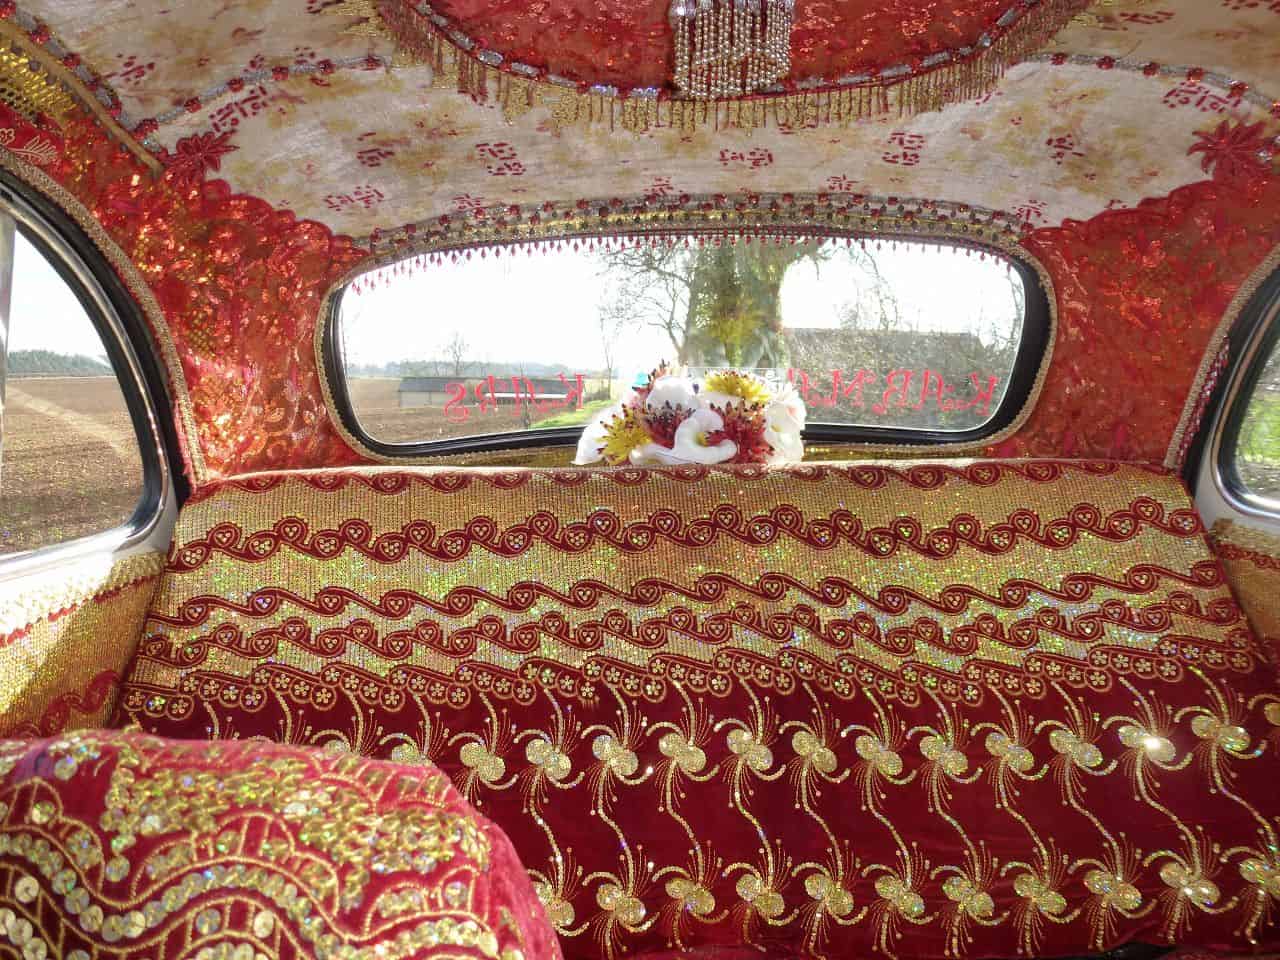 Introducing Kushi Kars Cotswold Wedding Car Hire Bespoke